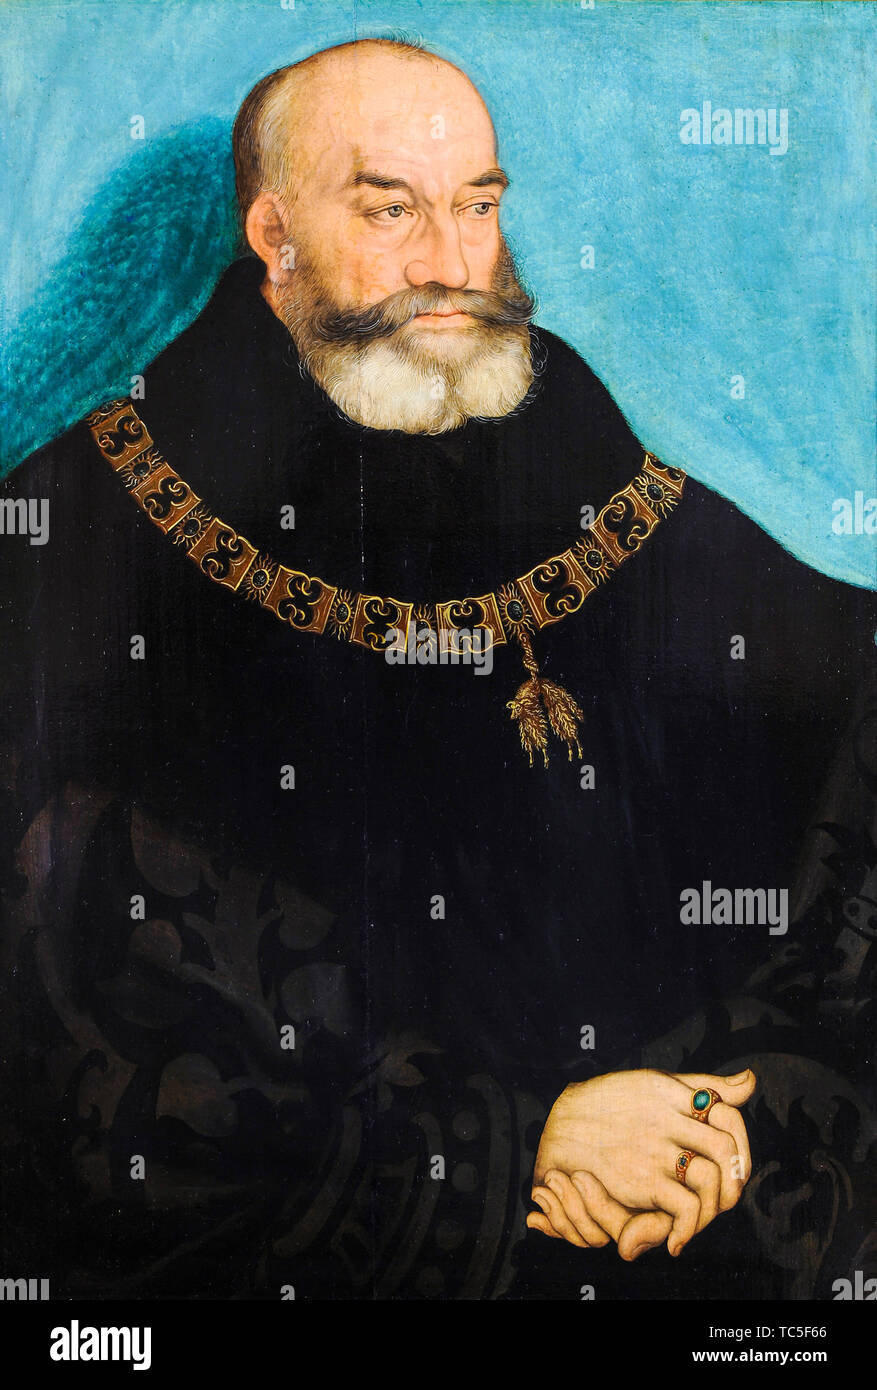 Lucas Cranach der Ältere, Georg der Bärtige, Herzog von Sachsen, 1471-1539, Portrait Malerei, 1534 Stockfoto